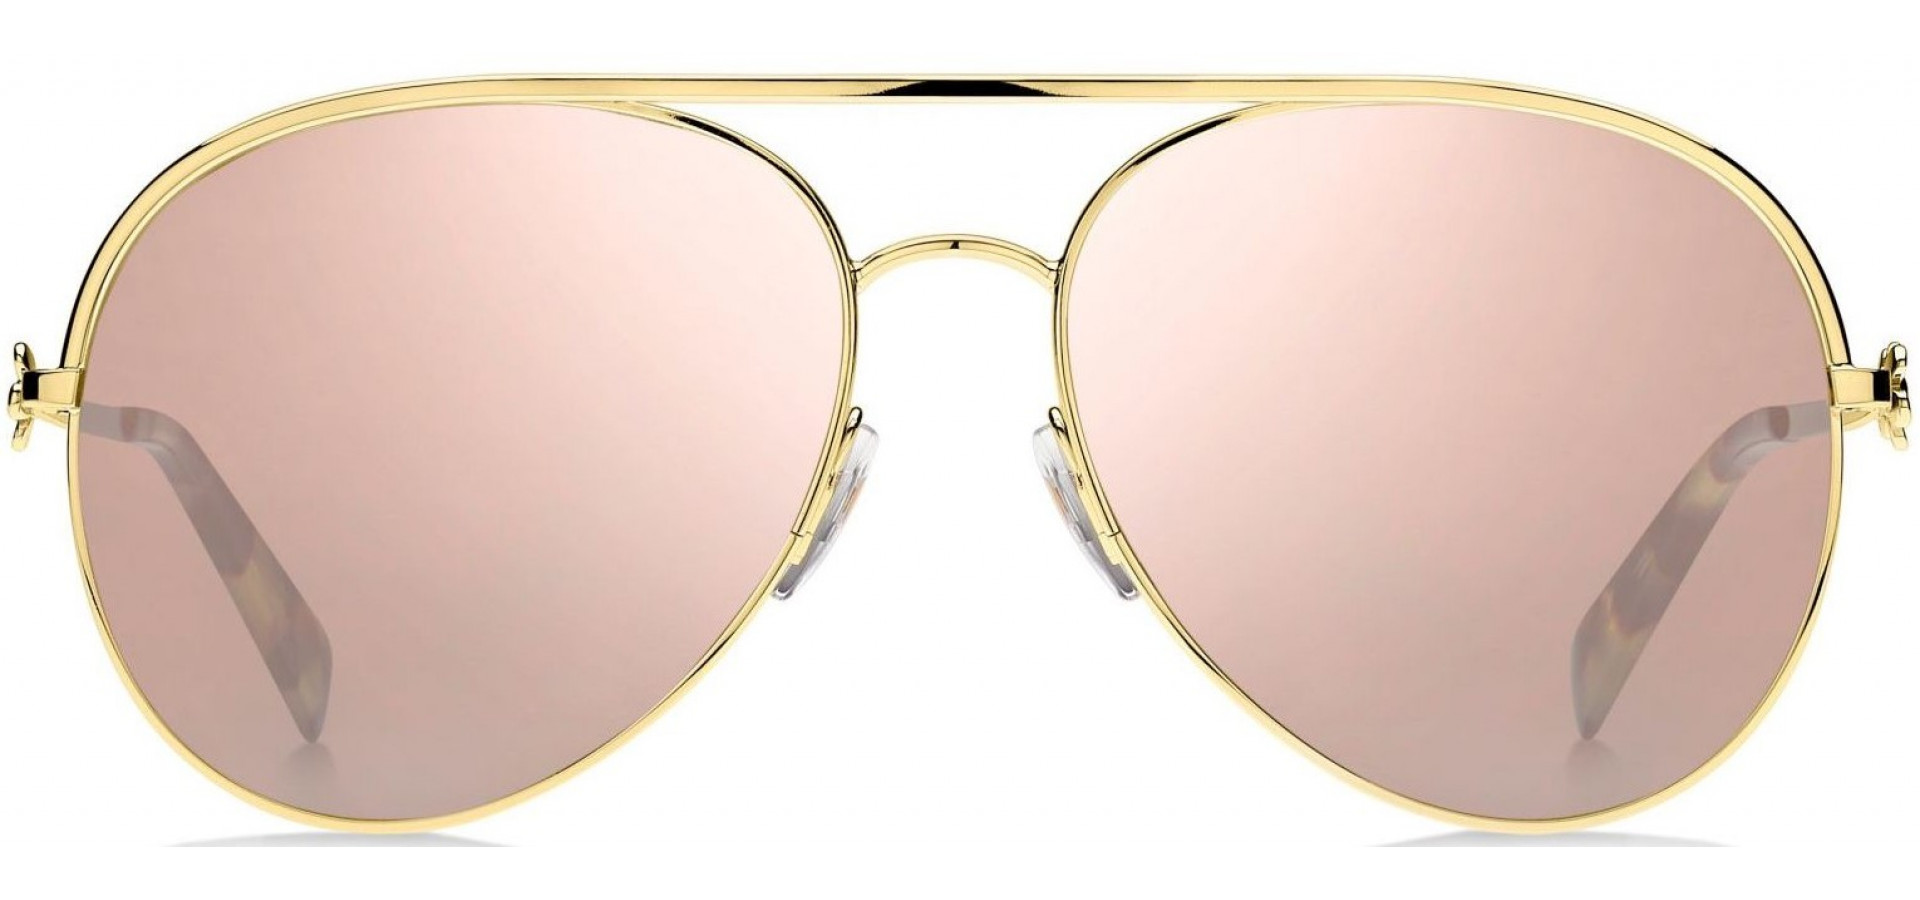 Sunčane naočale Marc Jacobs MARC DAISY 2: Boja: Rose Gold, Veličina: 58-16-145, Spol: ženske, Materijal: metal, Vrsta leće: polarizirane